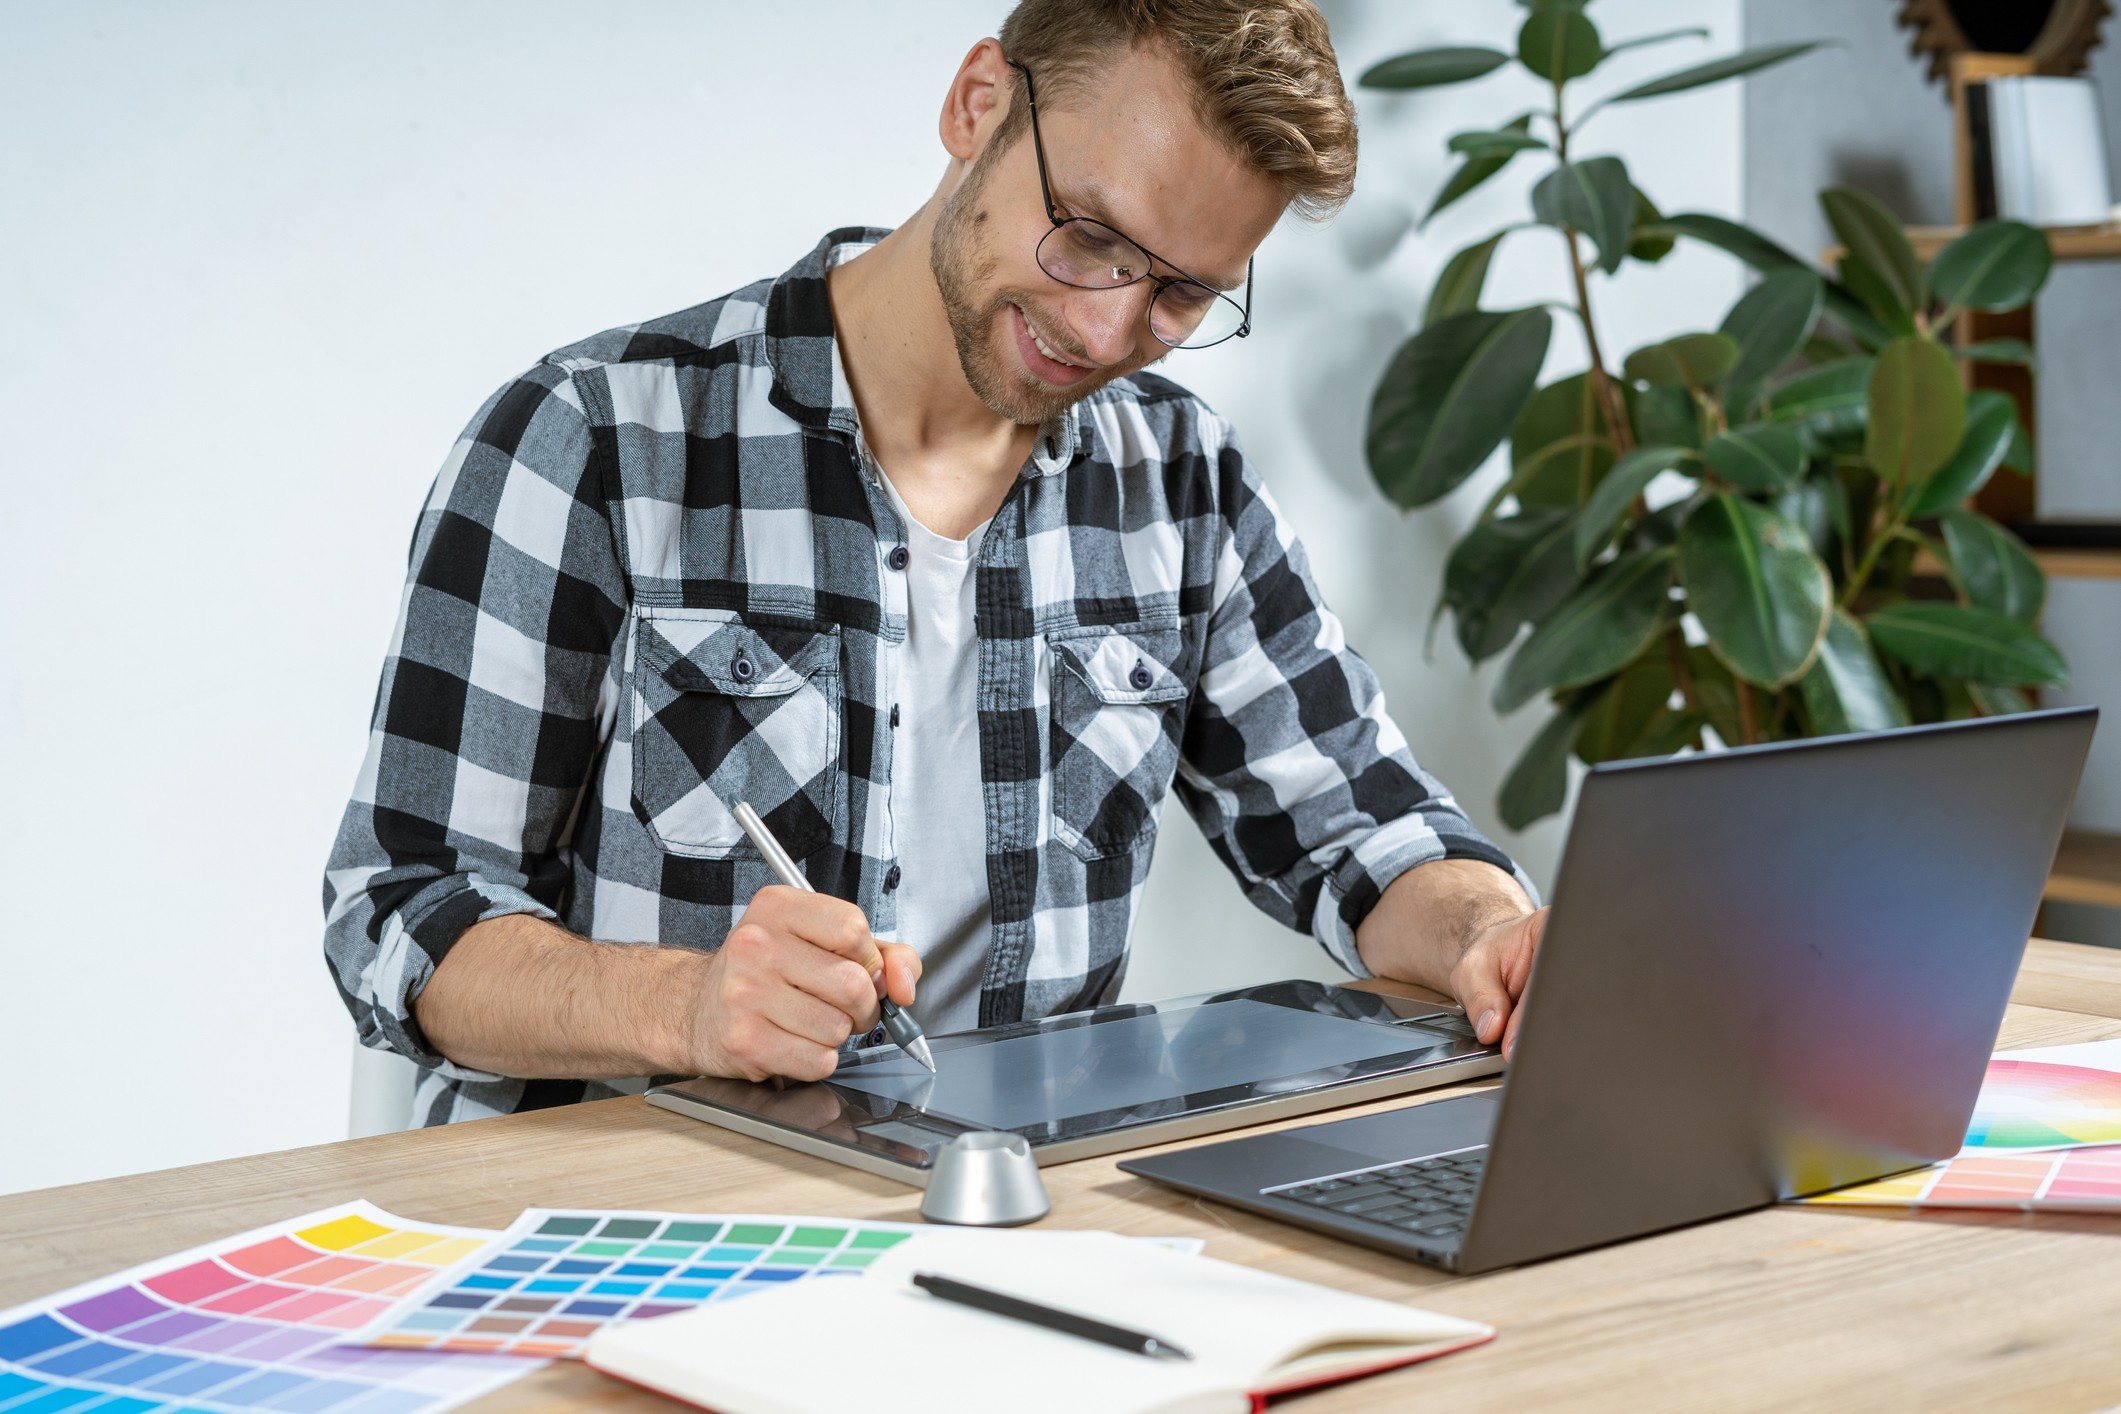 homem branco, loiro, de camisa xadrez preta está sentado na frente de uma mesa que tem um notebook, papeis coloridos e um tablet no qual ele usa para desenhar com uma caneta especial